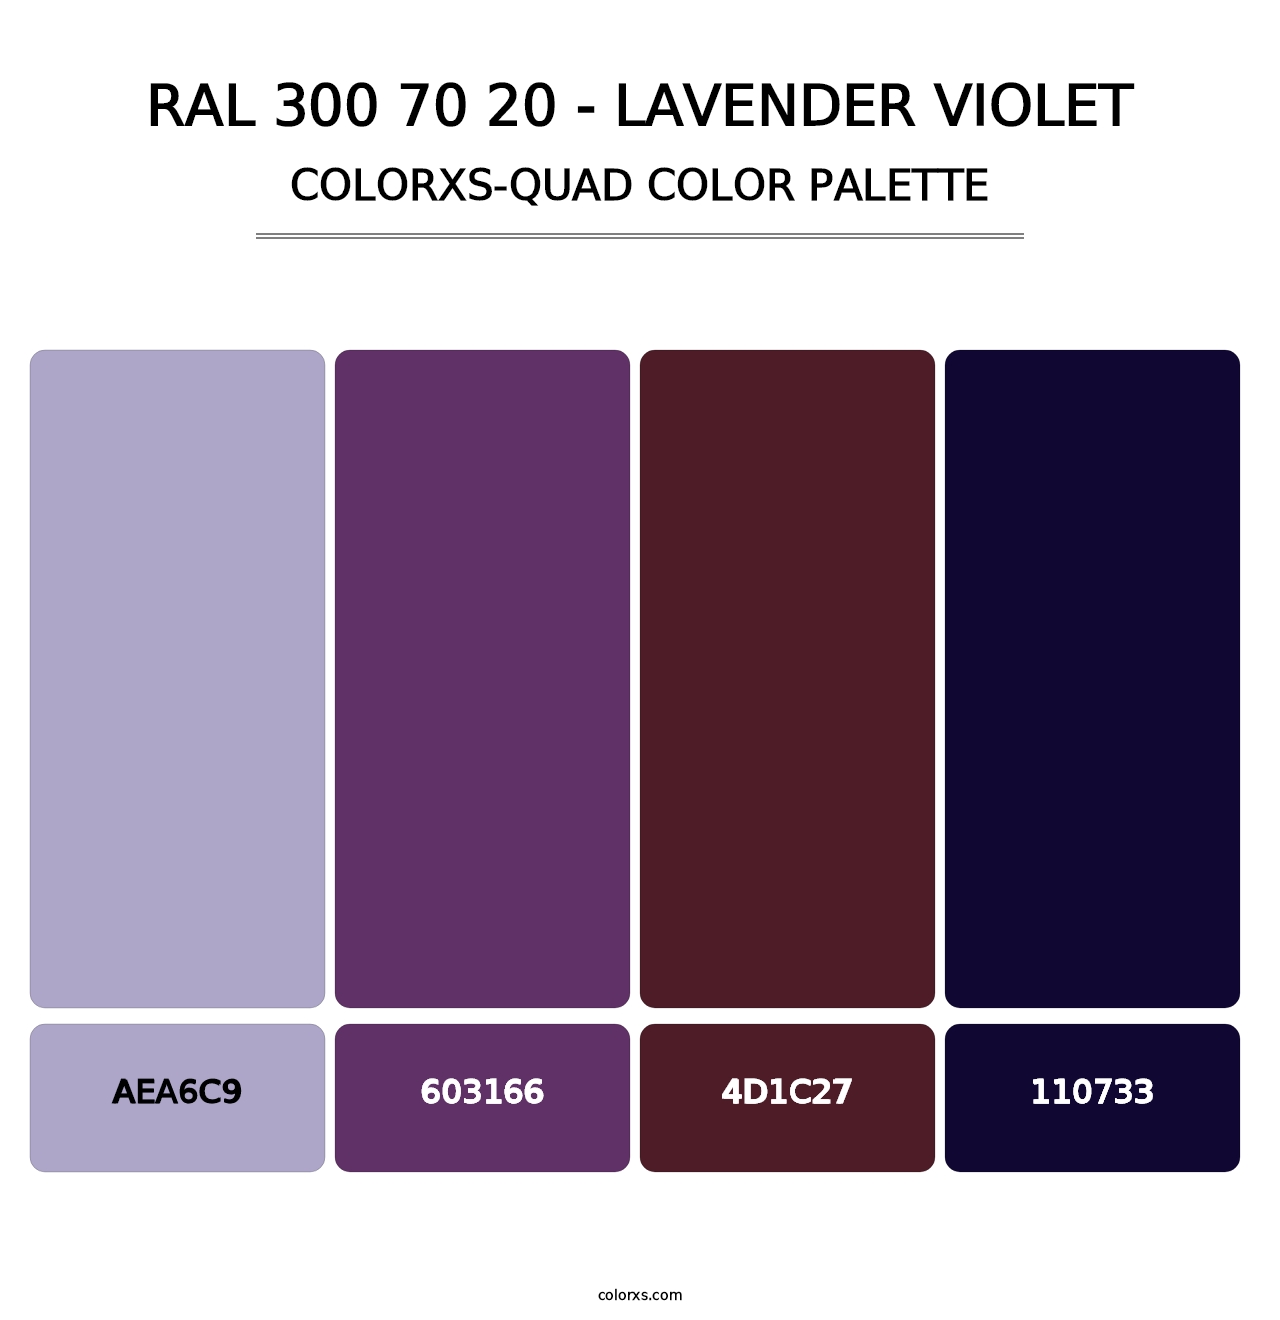 RAL 300 70 20 - Lavender Violet - Colorxs Quad Palette